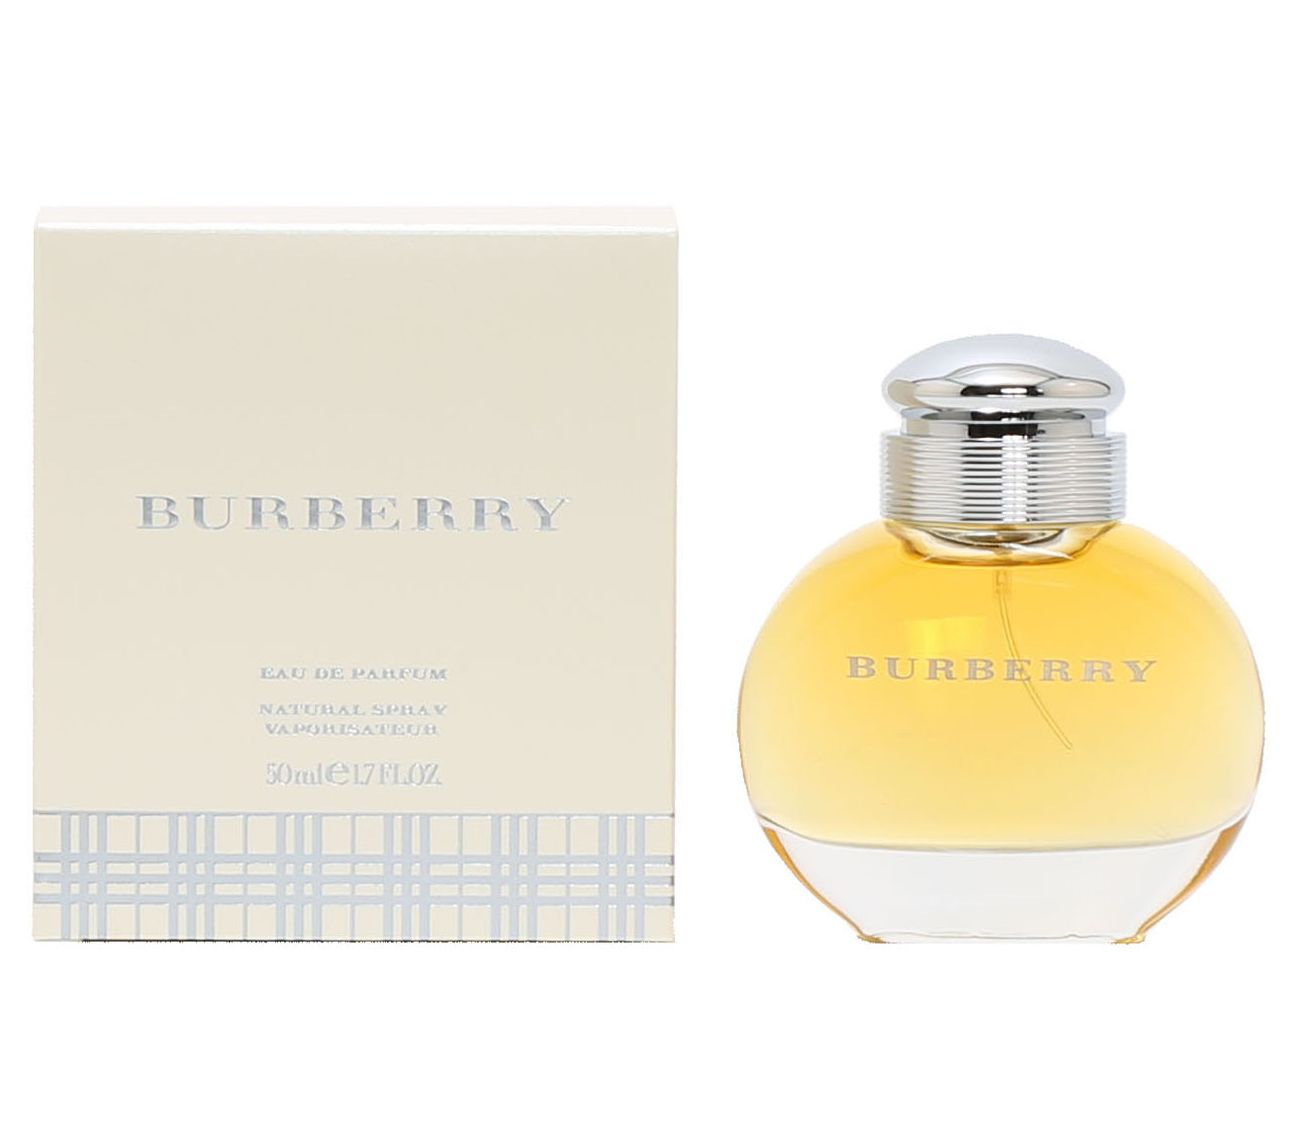 Burberry Classic for Women Eau De Parfum Spray,1.7-fl oz - QVC.com